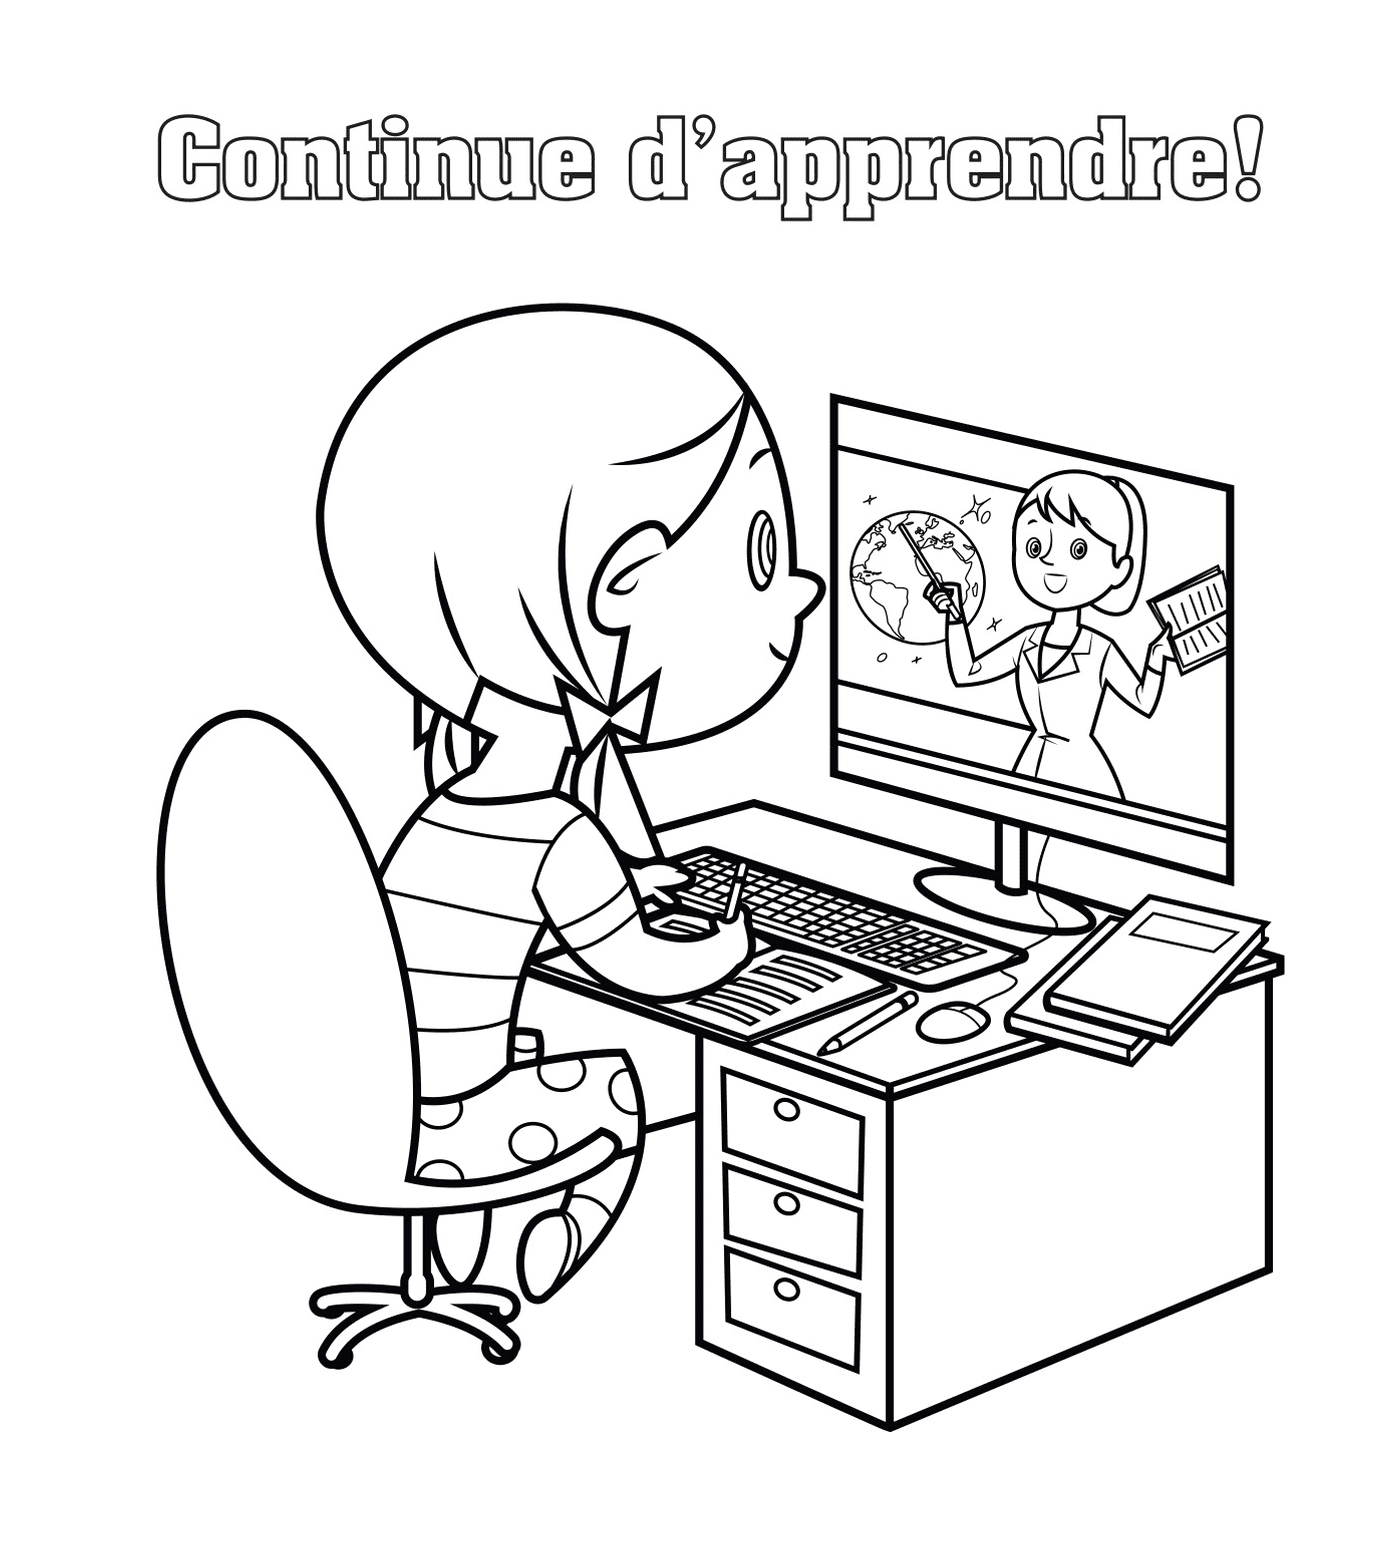   Une fille assise devant un ordinateur pour continuer à apprendre en ligne 